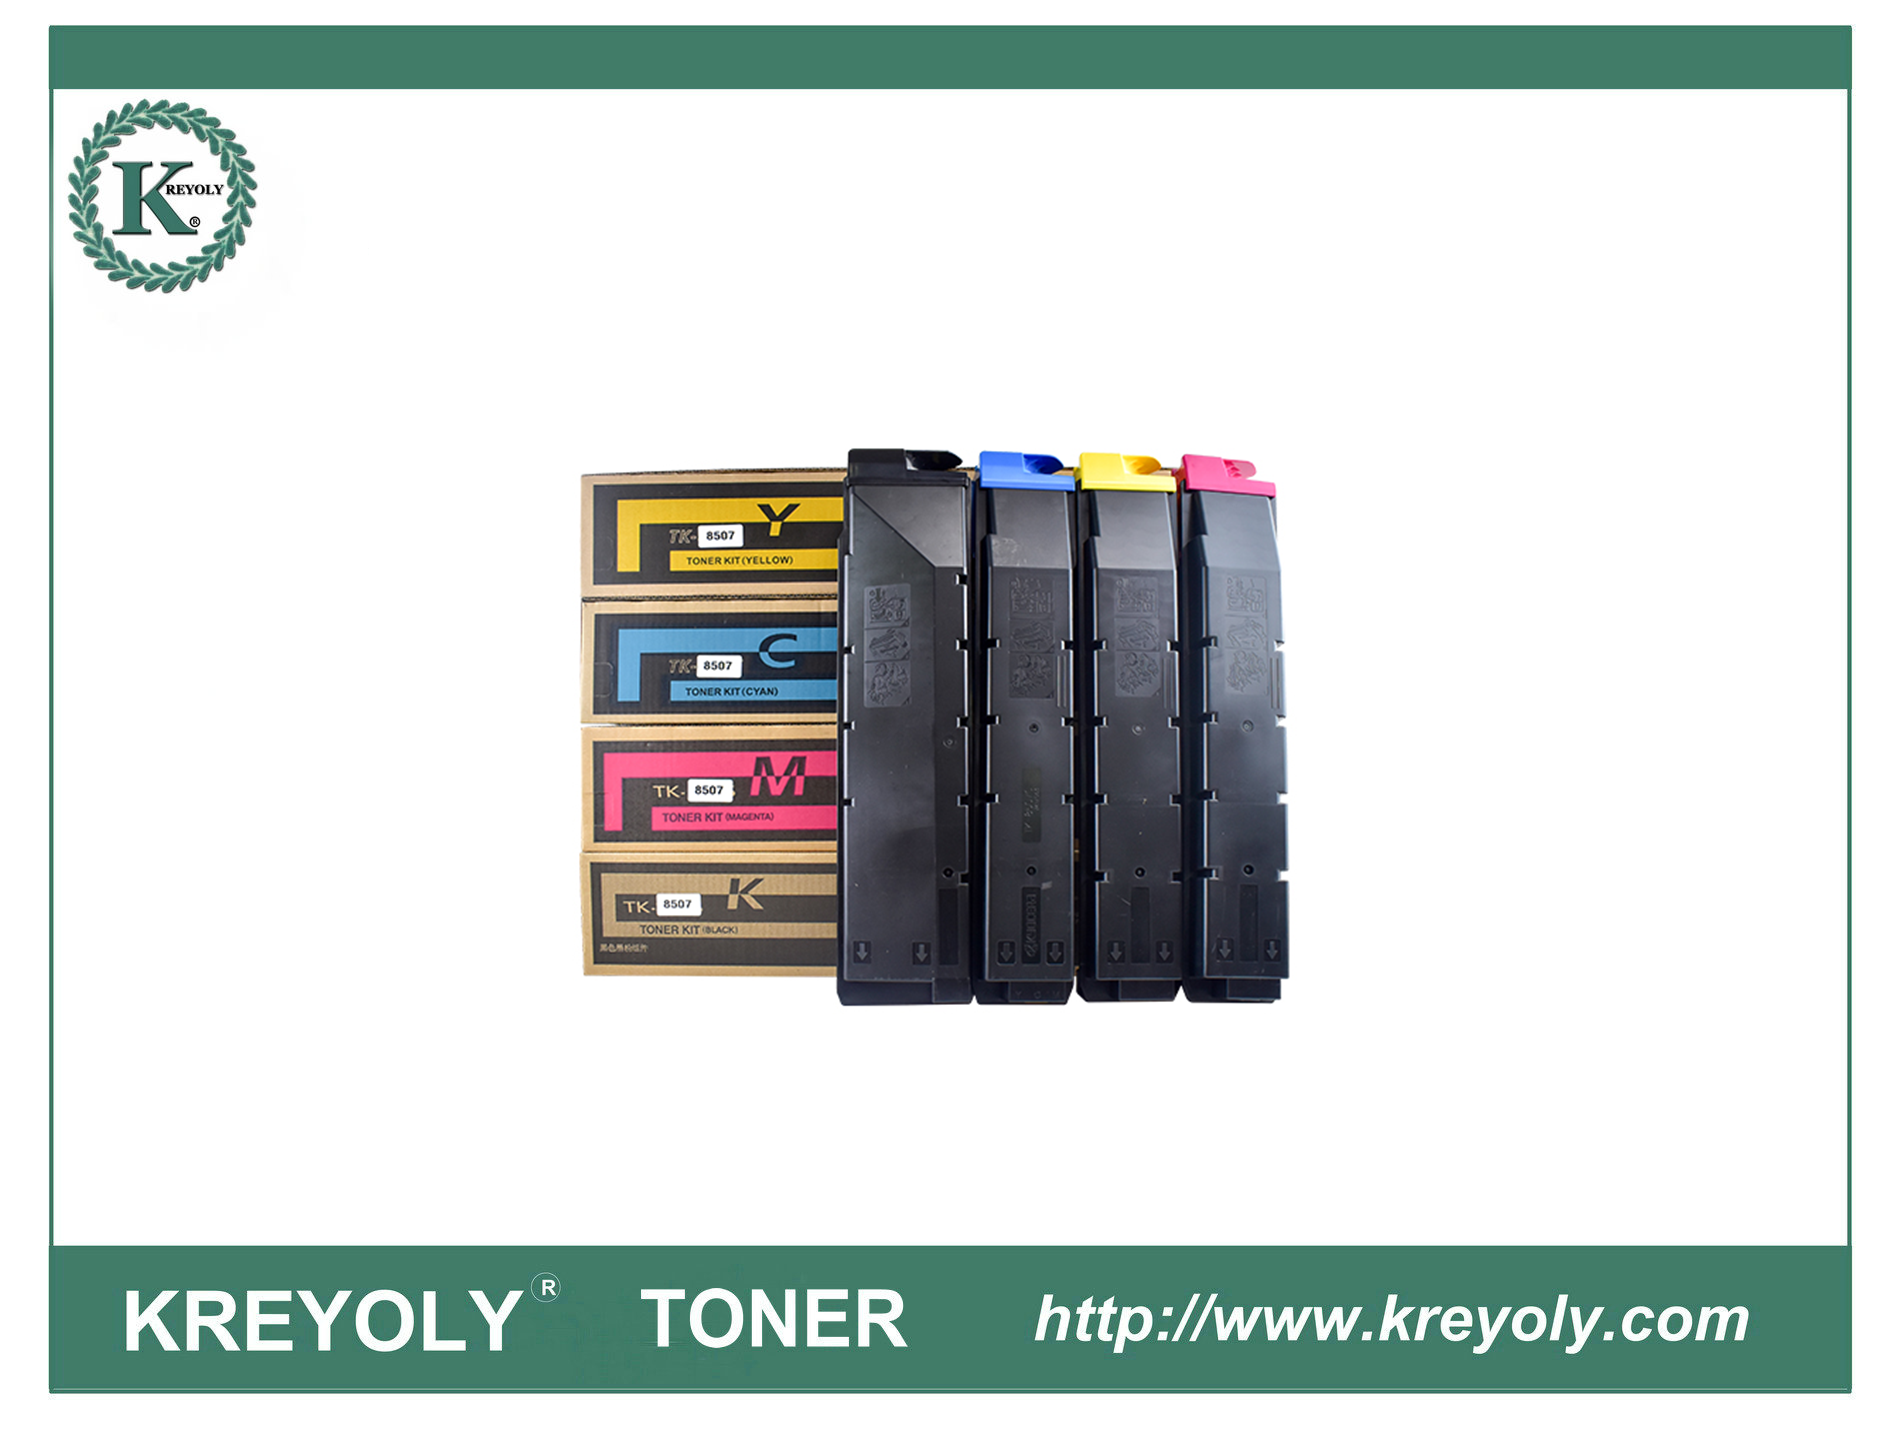 Cartucho de tóner fotocopiador Kyocera Kyocera TK8505 8506 8507 8508 8509 Color Bk C M Y Utilizado para Kyocera Taskalfa 4550ci/5550ci/5551ci